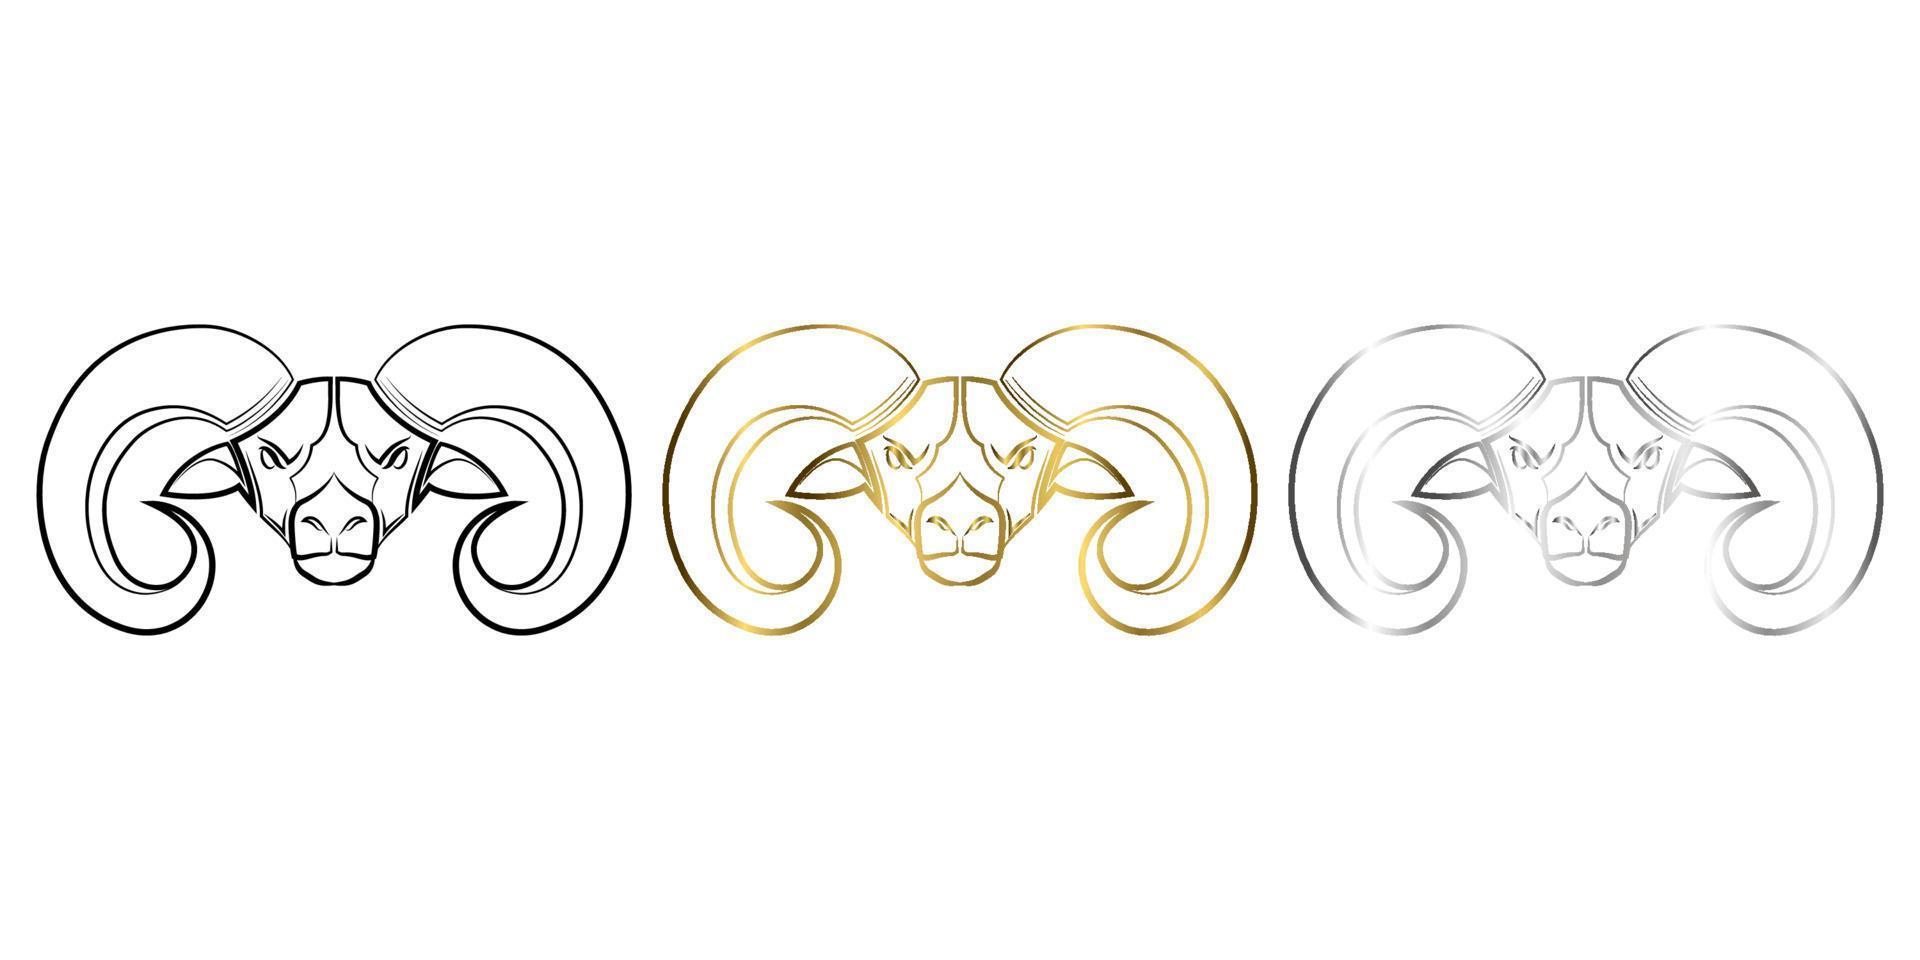 drie kleuren zwart goud en zilver lijntekeningen van grote hoorn schapen hoofd goed gebruik voor symbool mascotte pictogram avatar tattoo t-shirt ontwerp logo of elk ontwerp vector